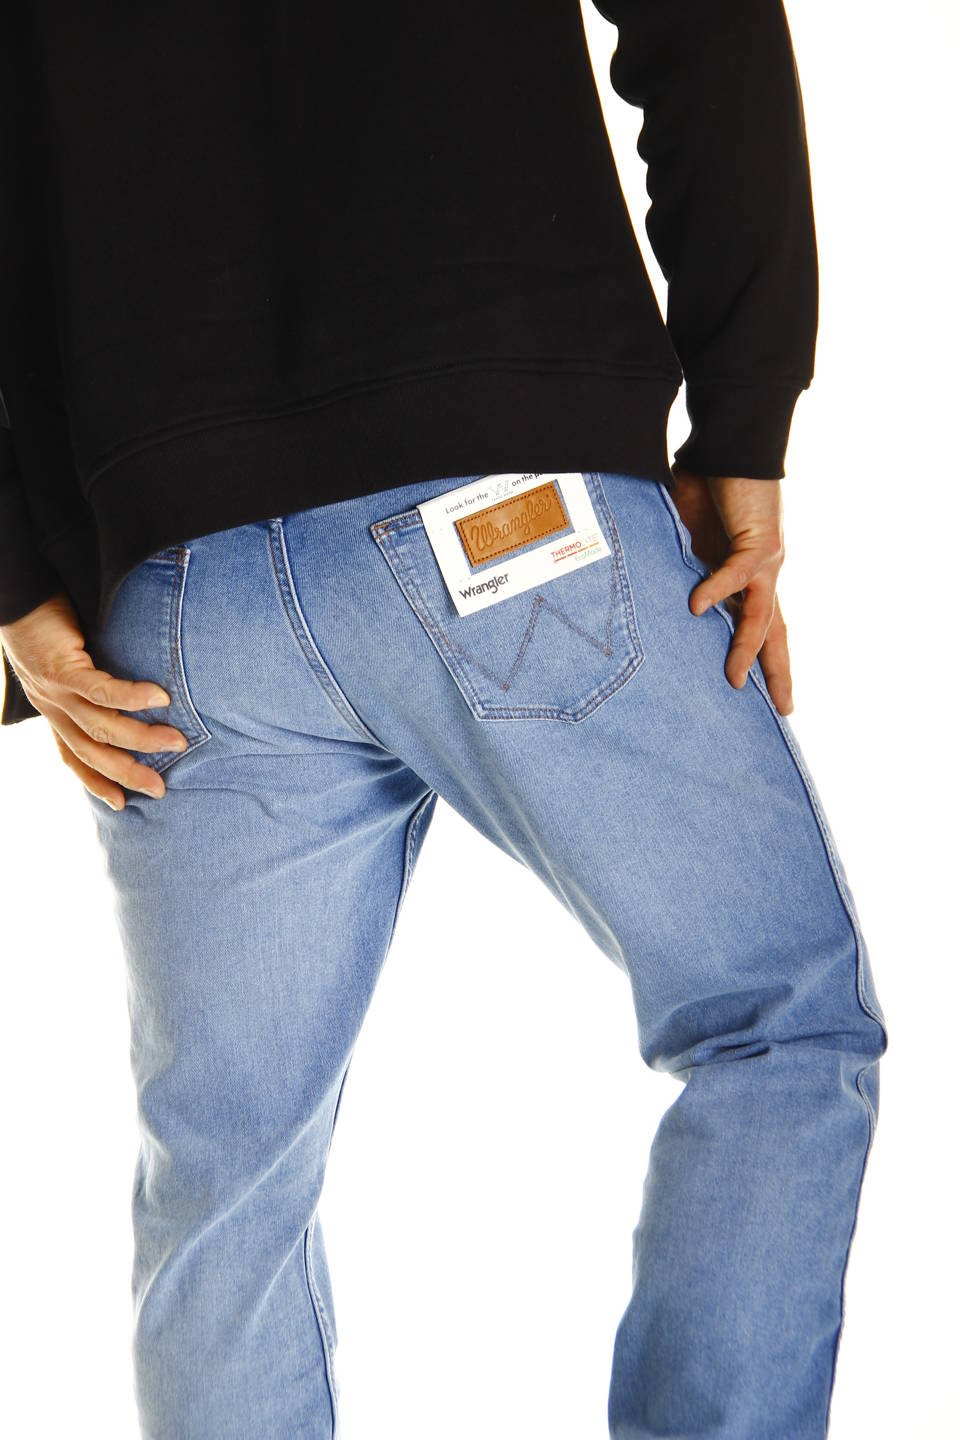 WRANGLER GREENSBORO Blow Out Jeans 34 X 30 men's trousers W34 L30, Spodnie  \ Wrangler \ Męskie \ W38 L36